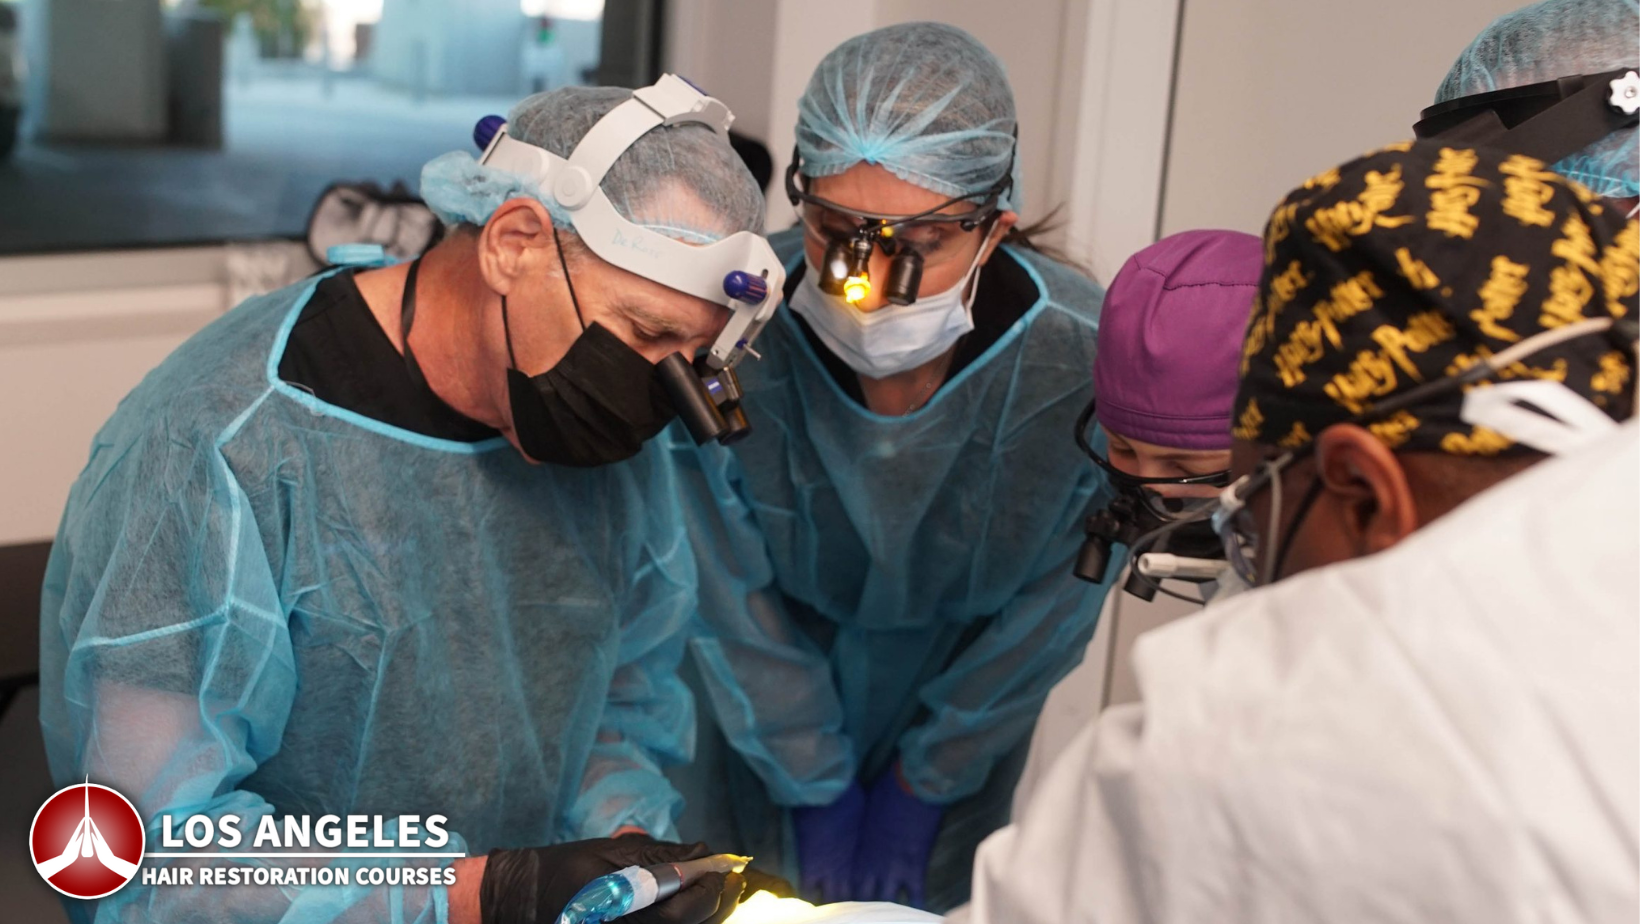 Los Angeles kurser för hårrestaurering 2022 - Hands on Cadaver Lab Workshop FUE-hårtransplantation